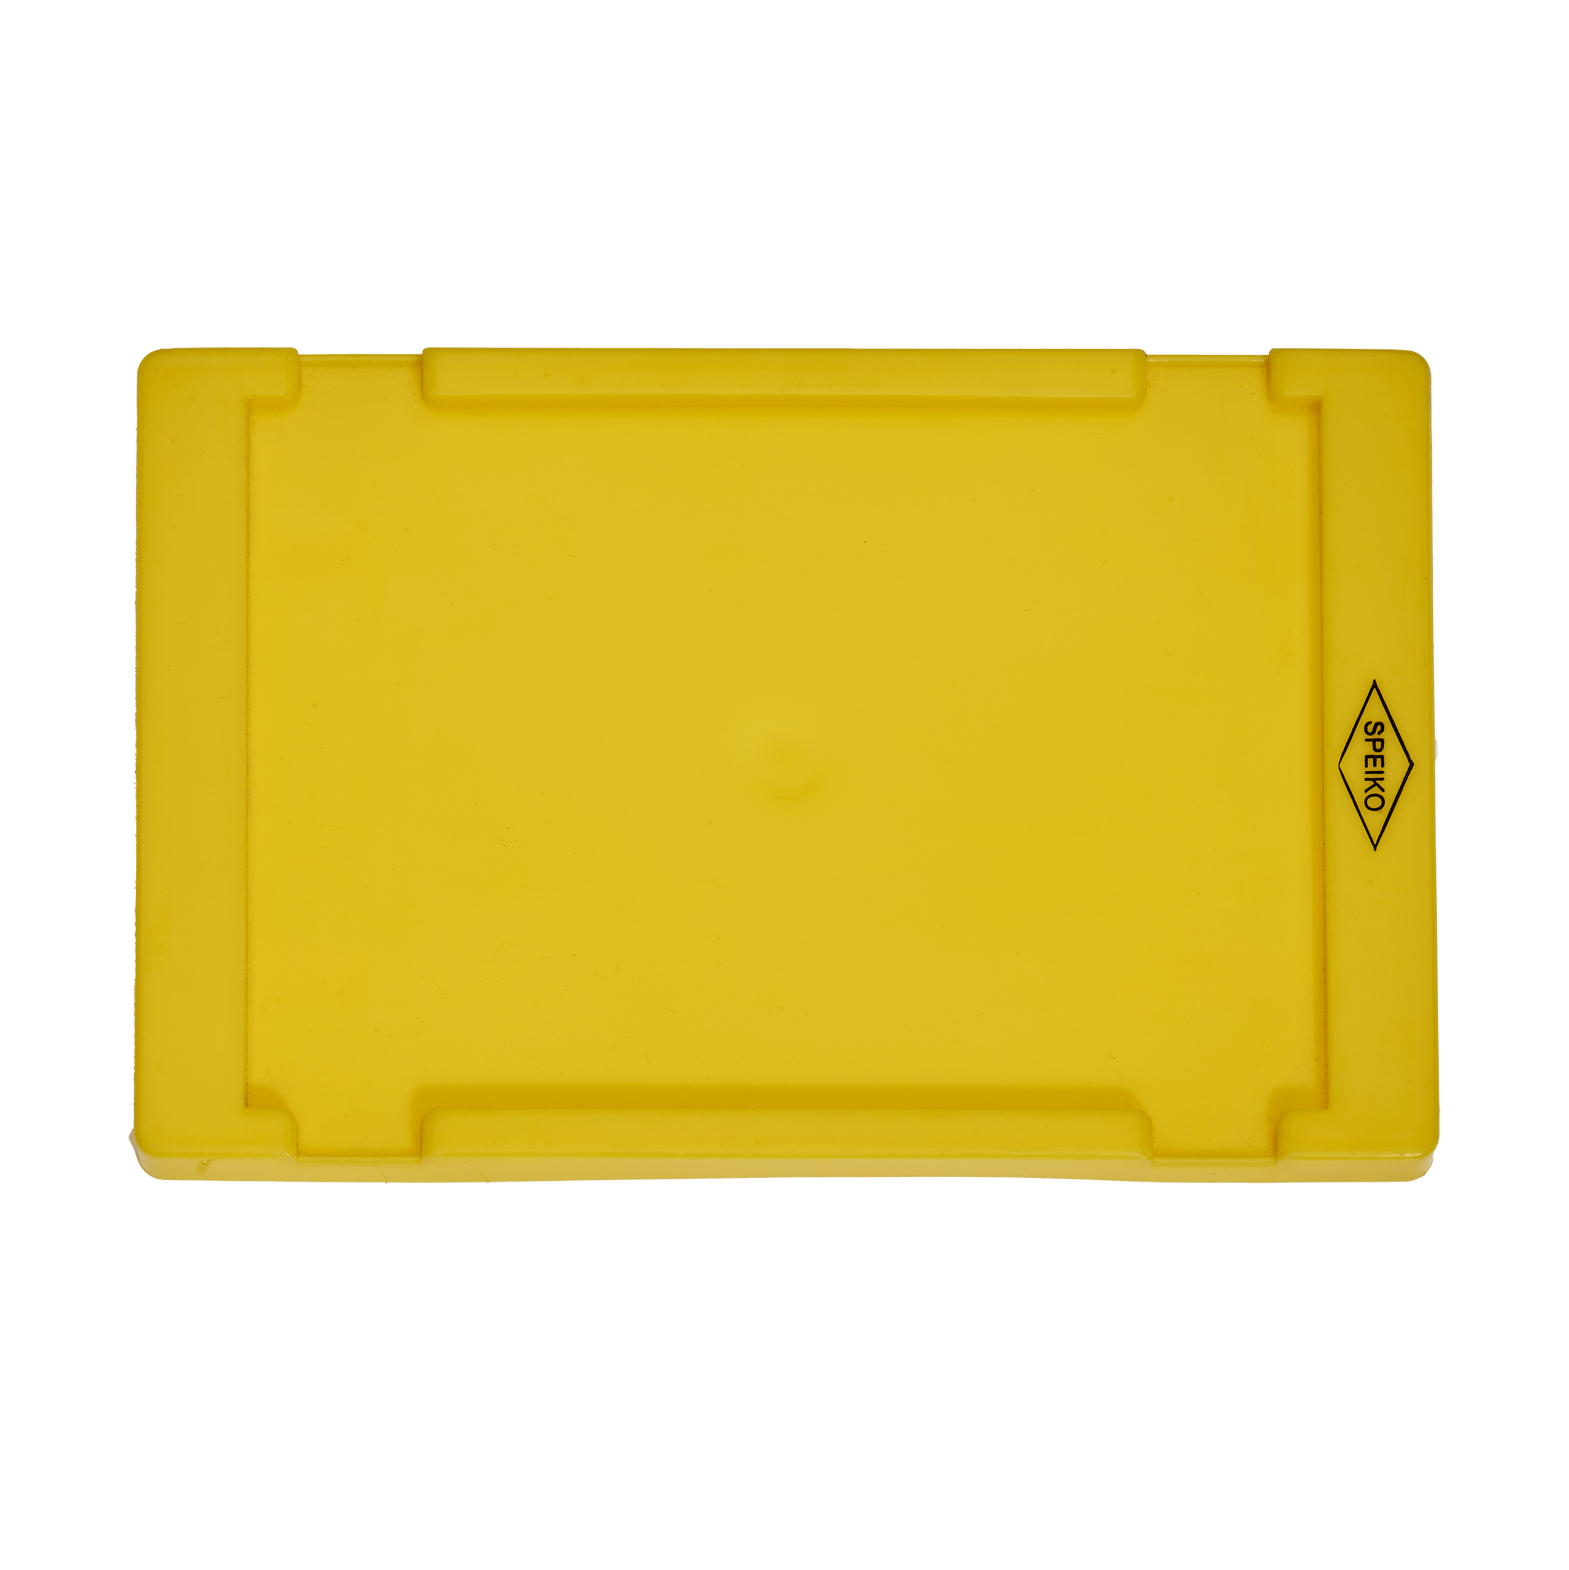 SPEIKO Ersatzdeckel, für Versandcontainer 1,3 l, gelb - 1 Stück